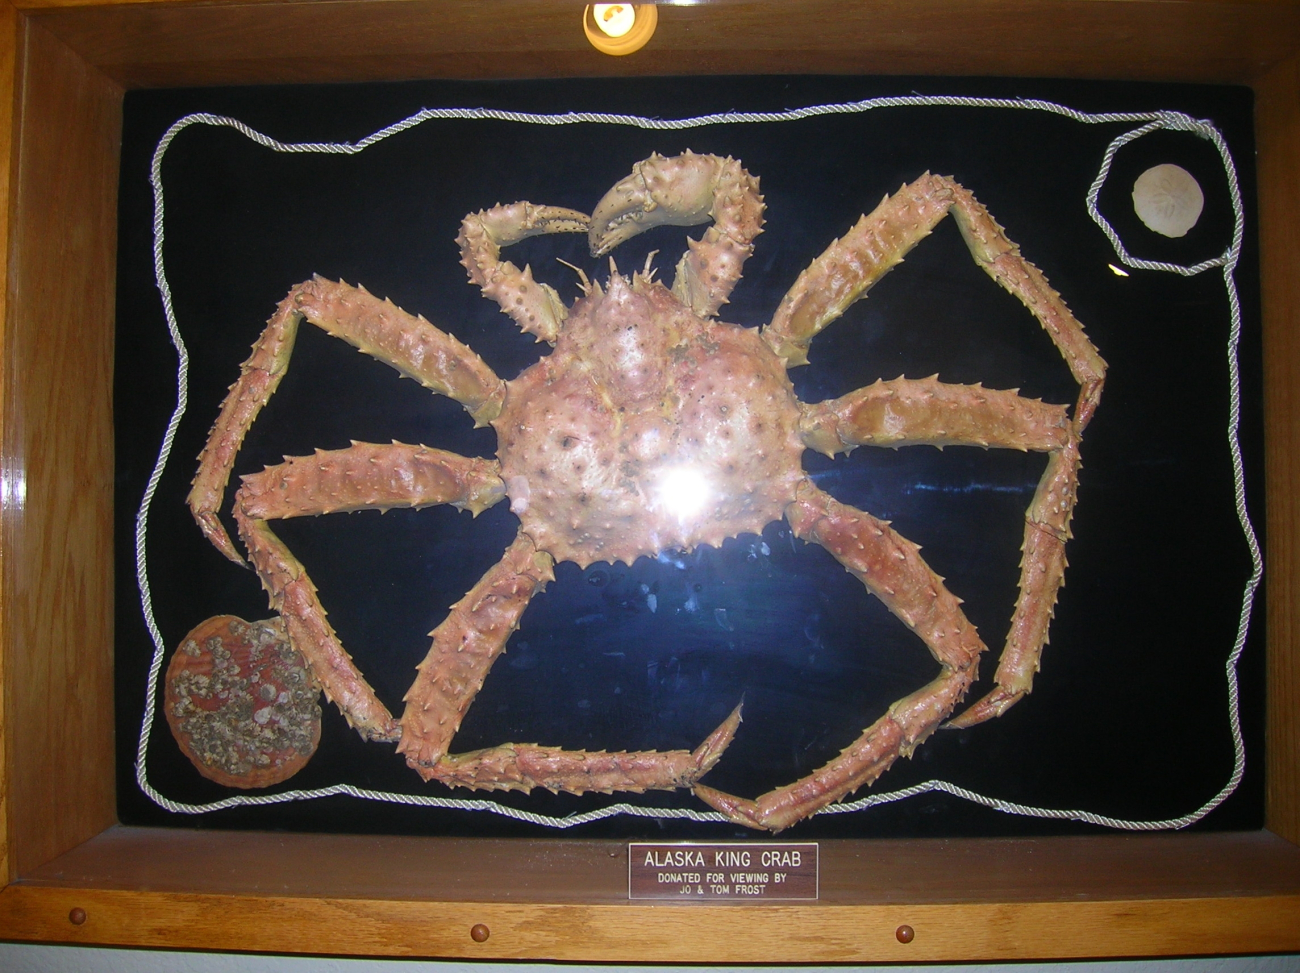 An Alaska king crab mounted and displayed at the Kodiak airport